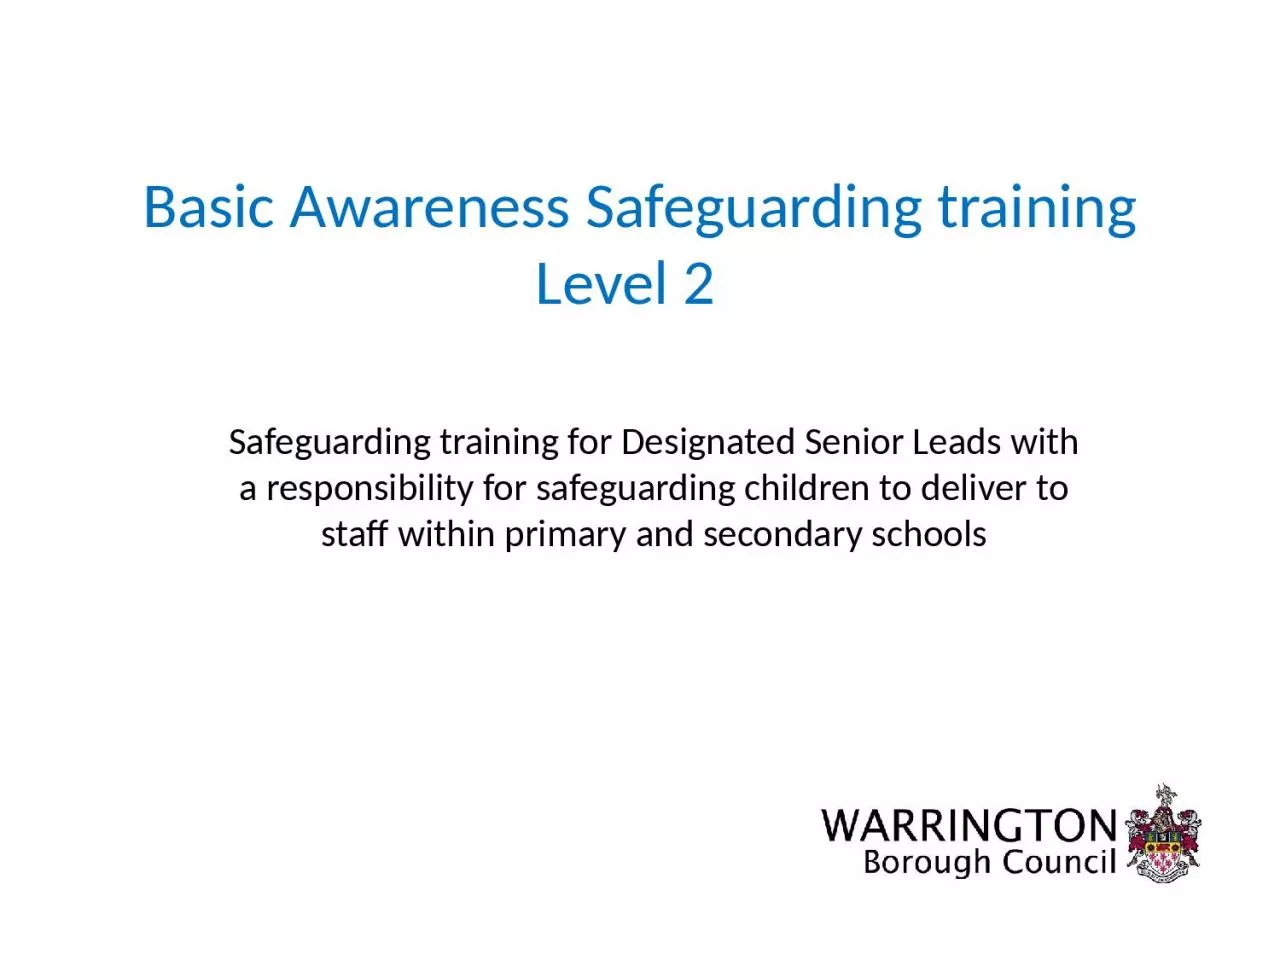 Basic Awareness Safeguarding training Level 2